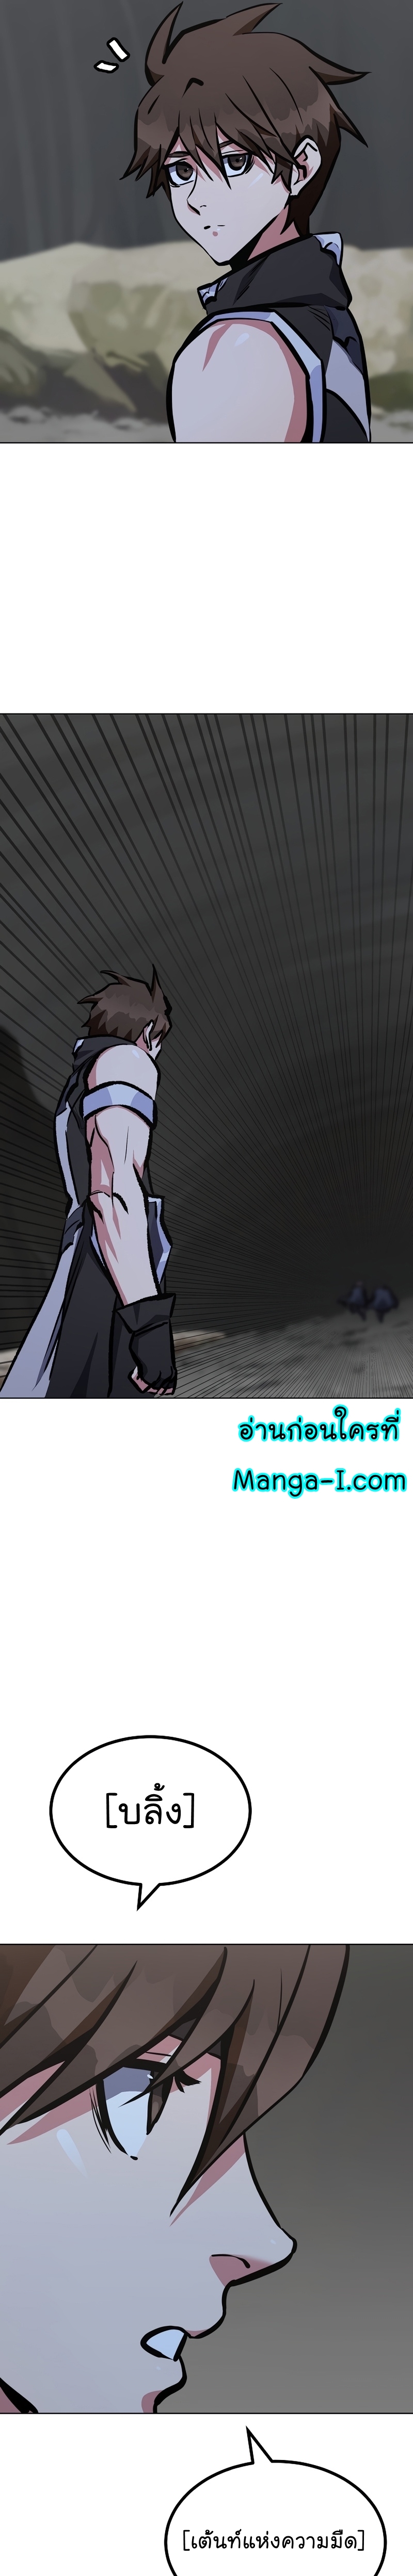 Manga Manhwa Level 1 Player 68 (33)